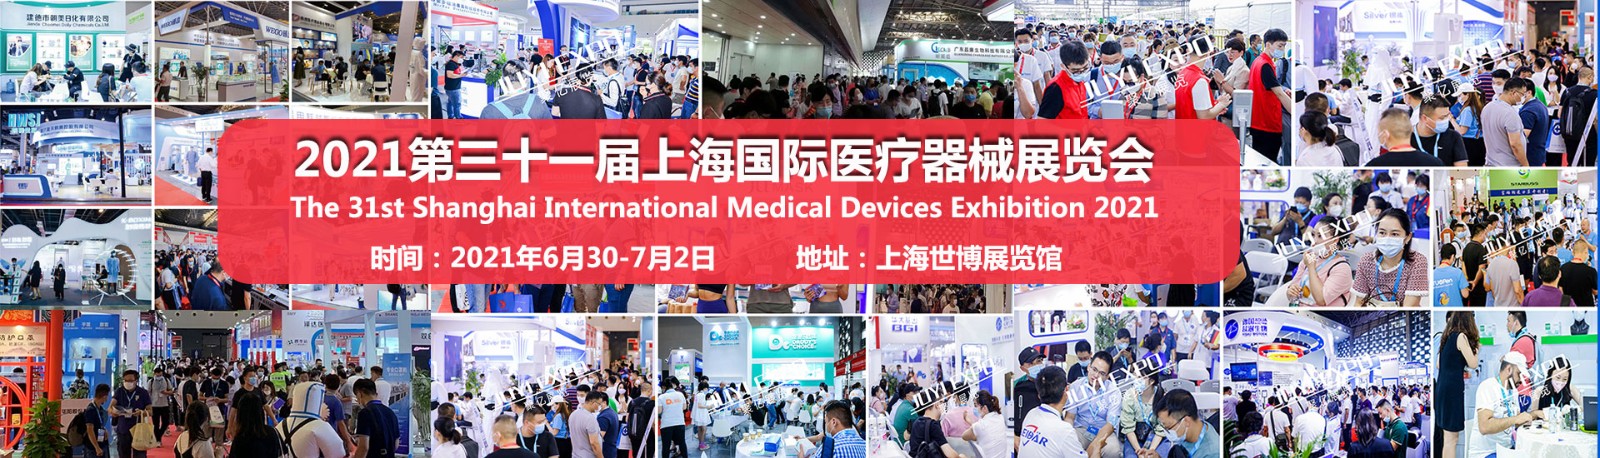 上海国际医疗器械展览会特装效果图